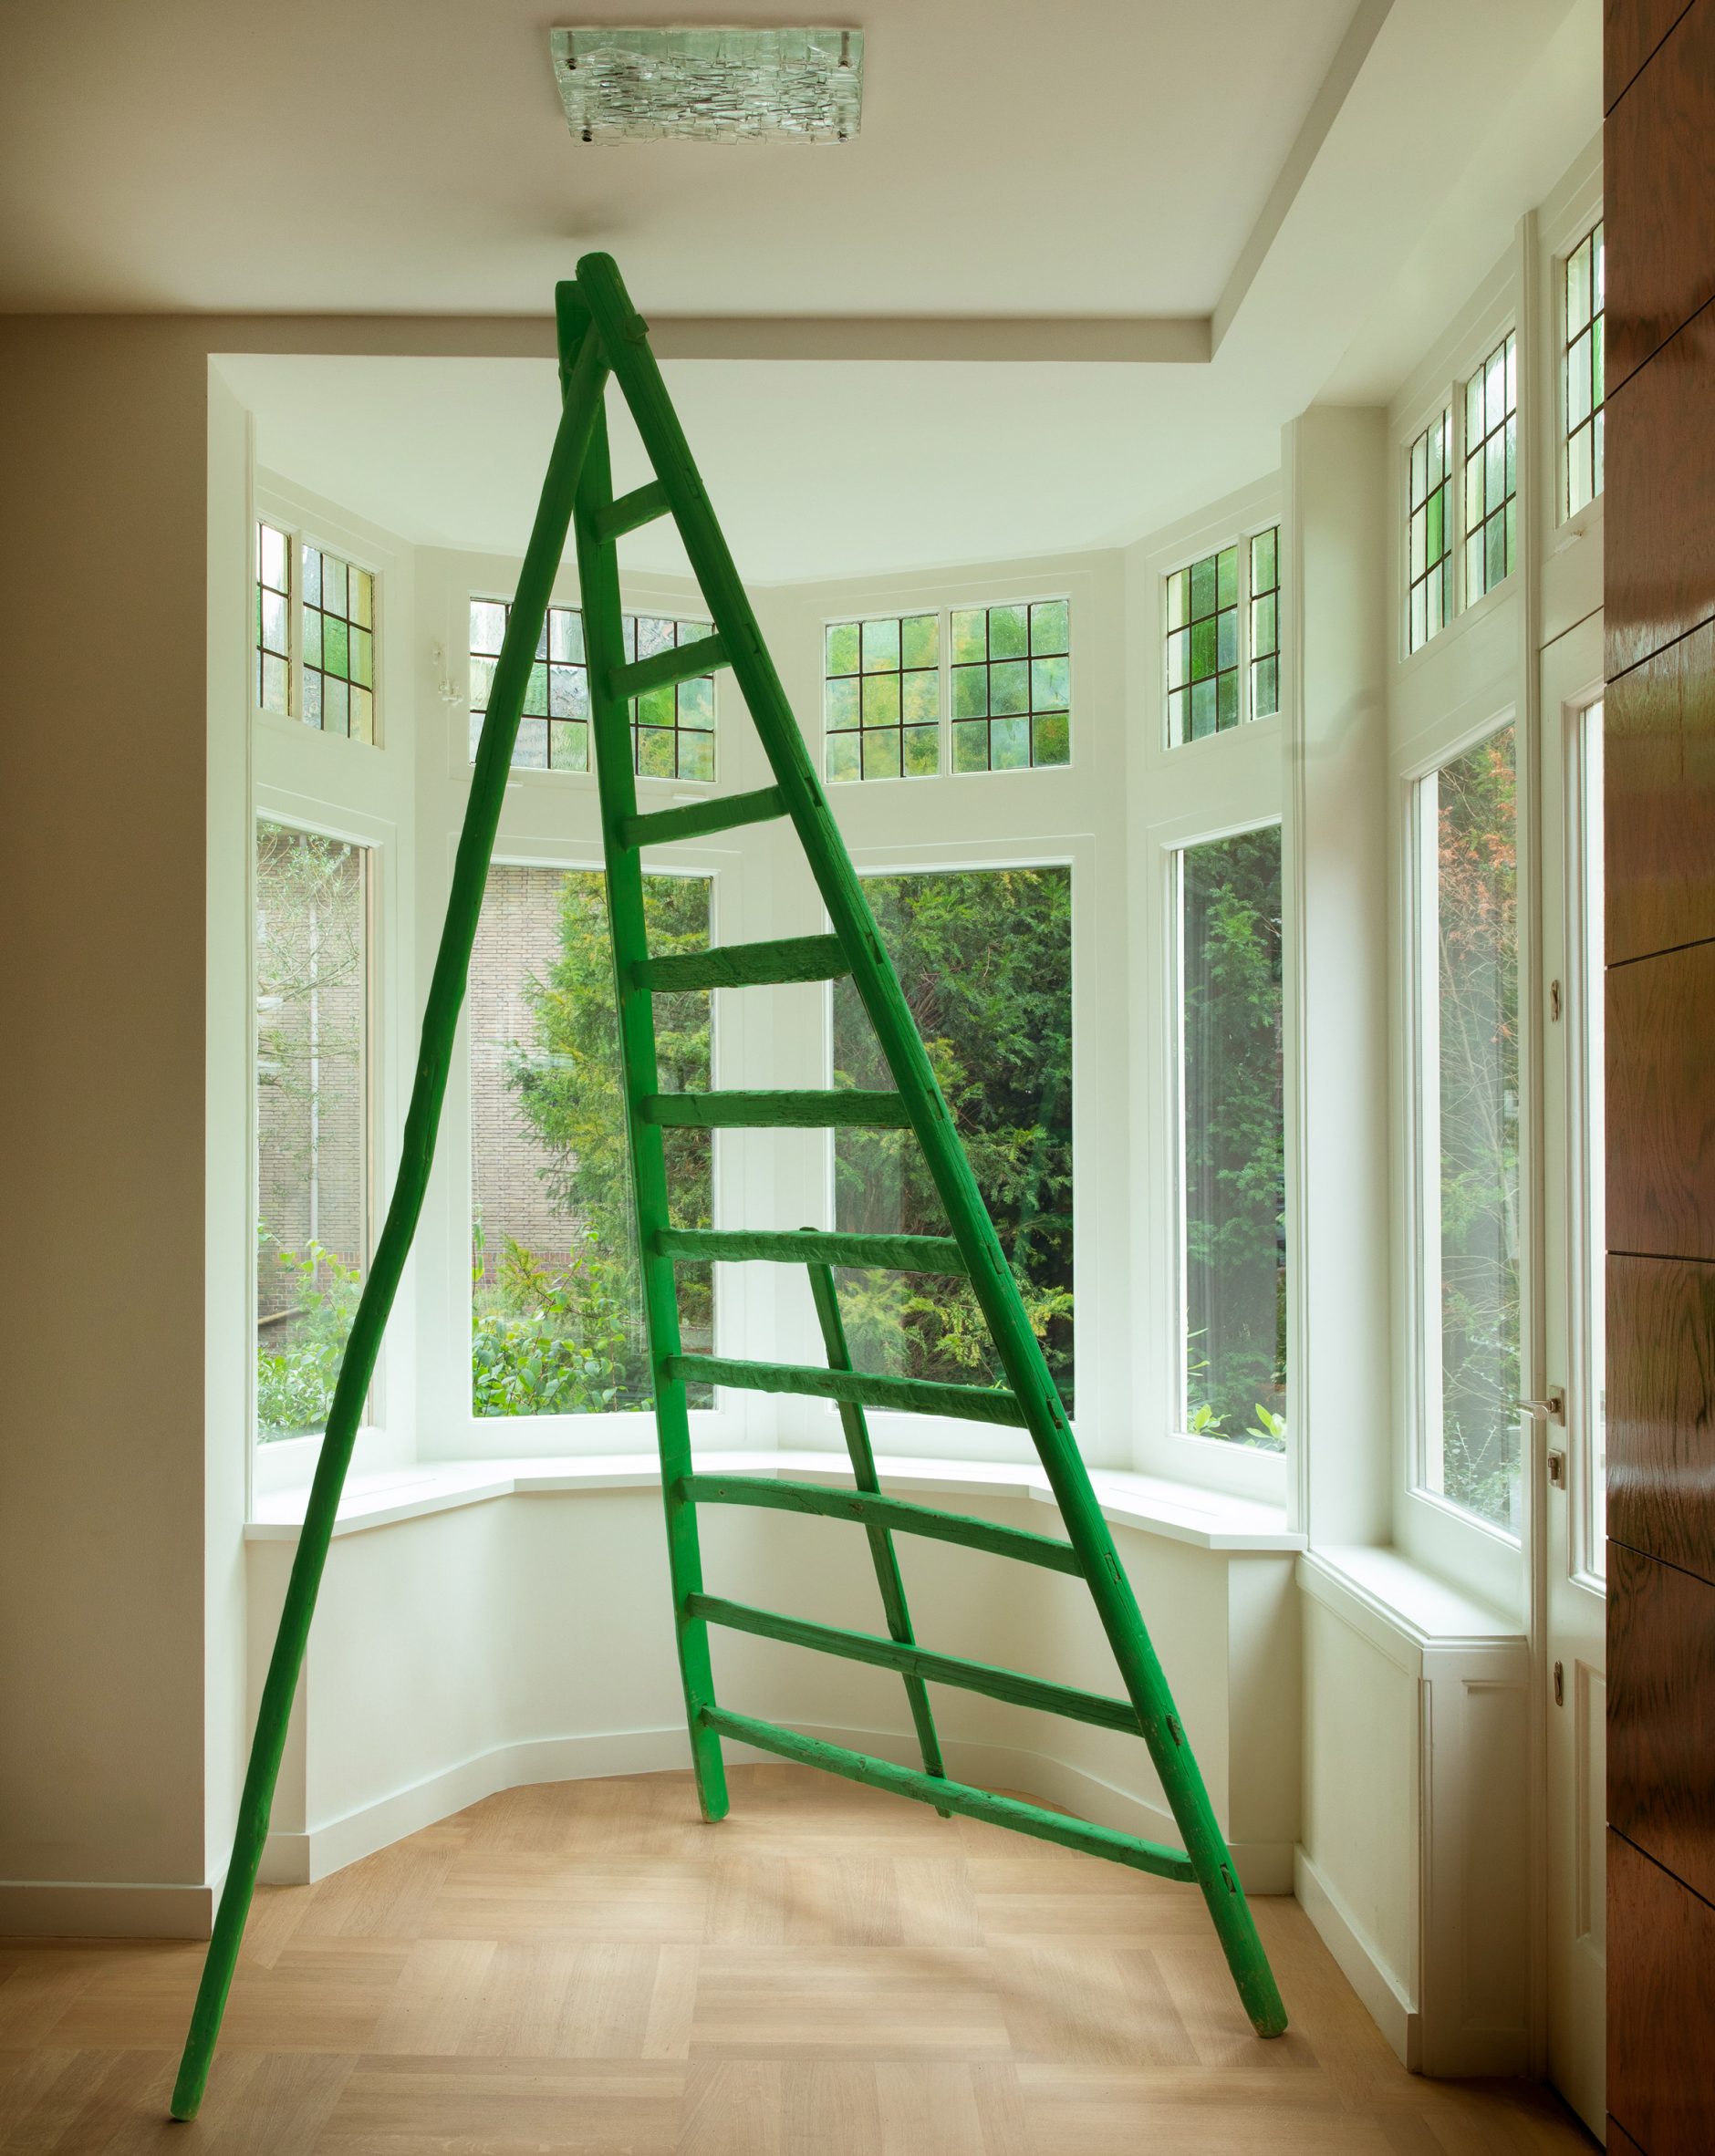 Lumpy green fruit-picking ladder